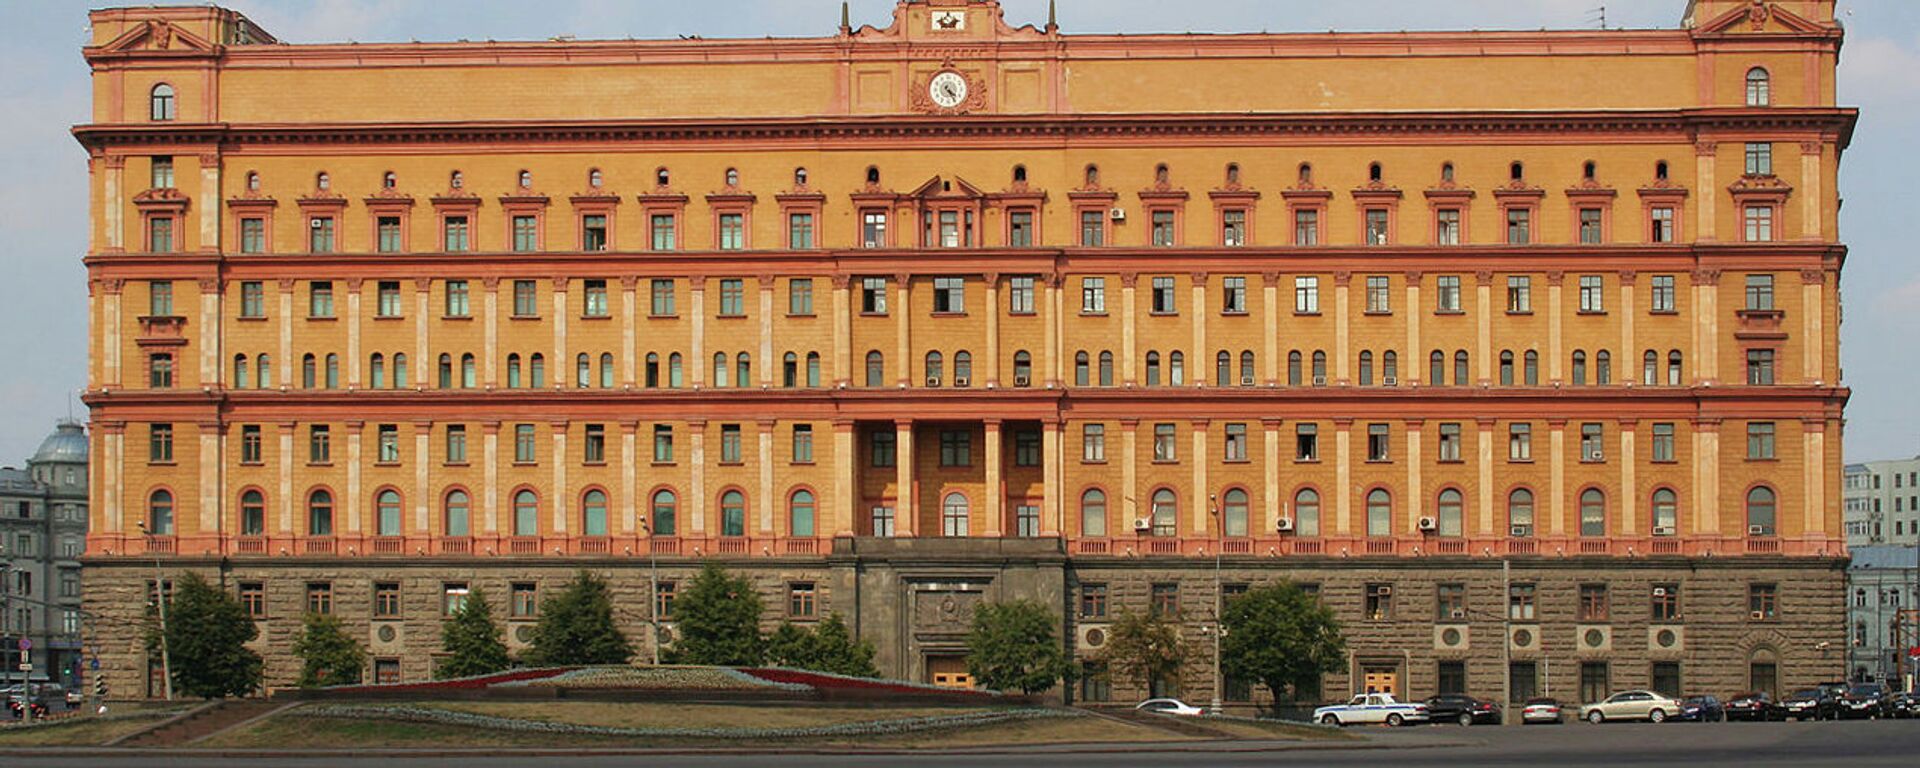 Zgrada ruske Federalne službe bezbednosti (FSB) u Moskvi. - Sputnik Srbija, 1920, 09.08.2021